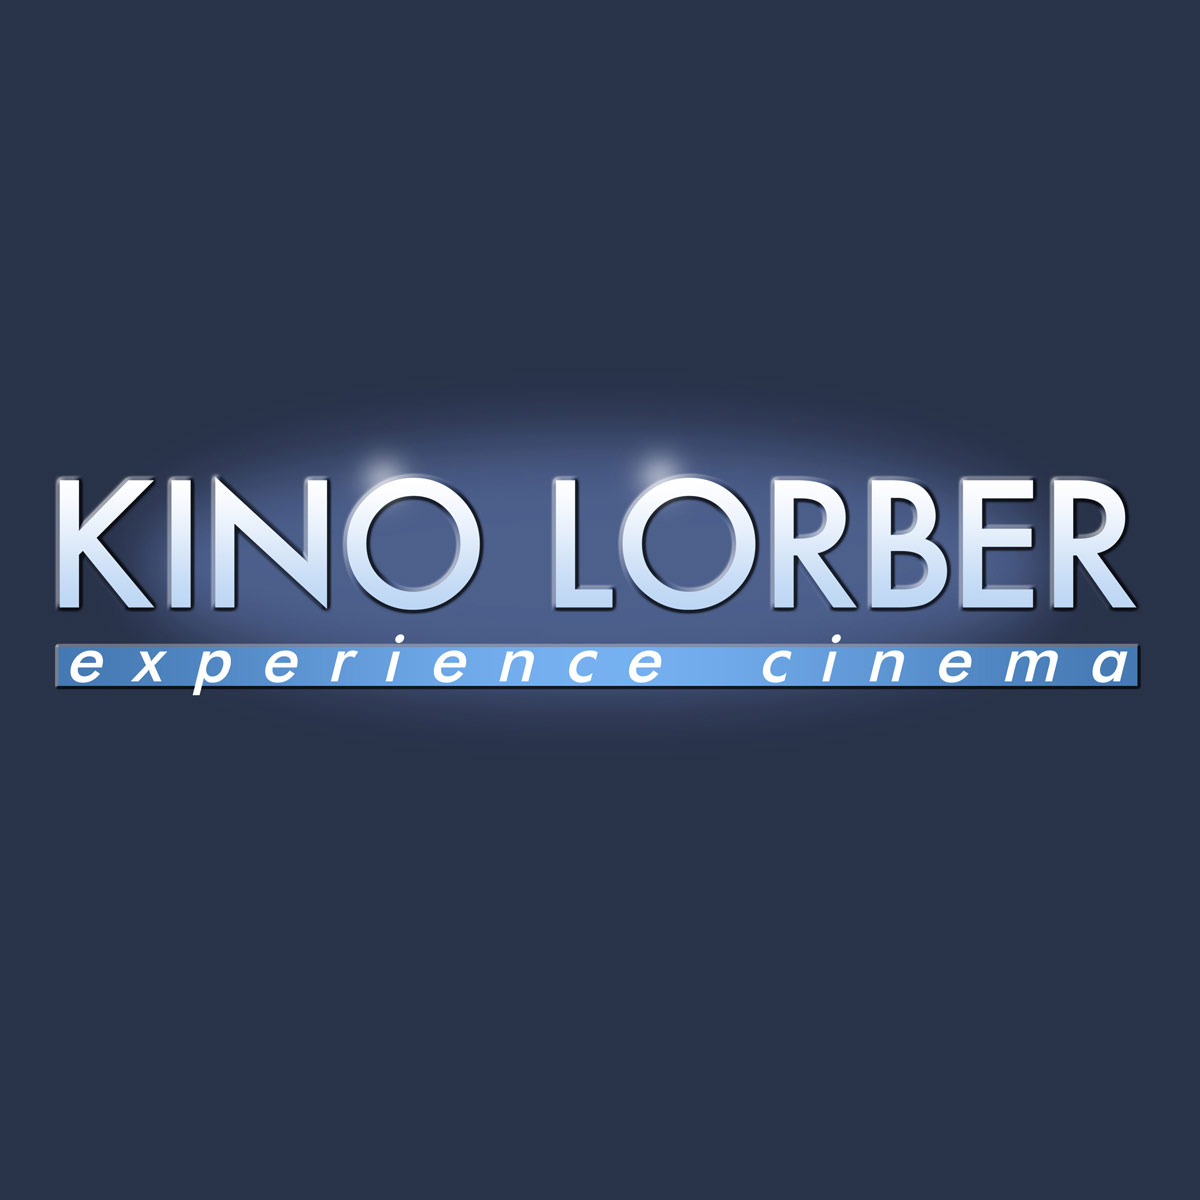 www.kinolorber.com